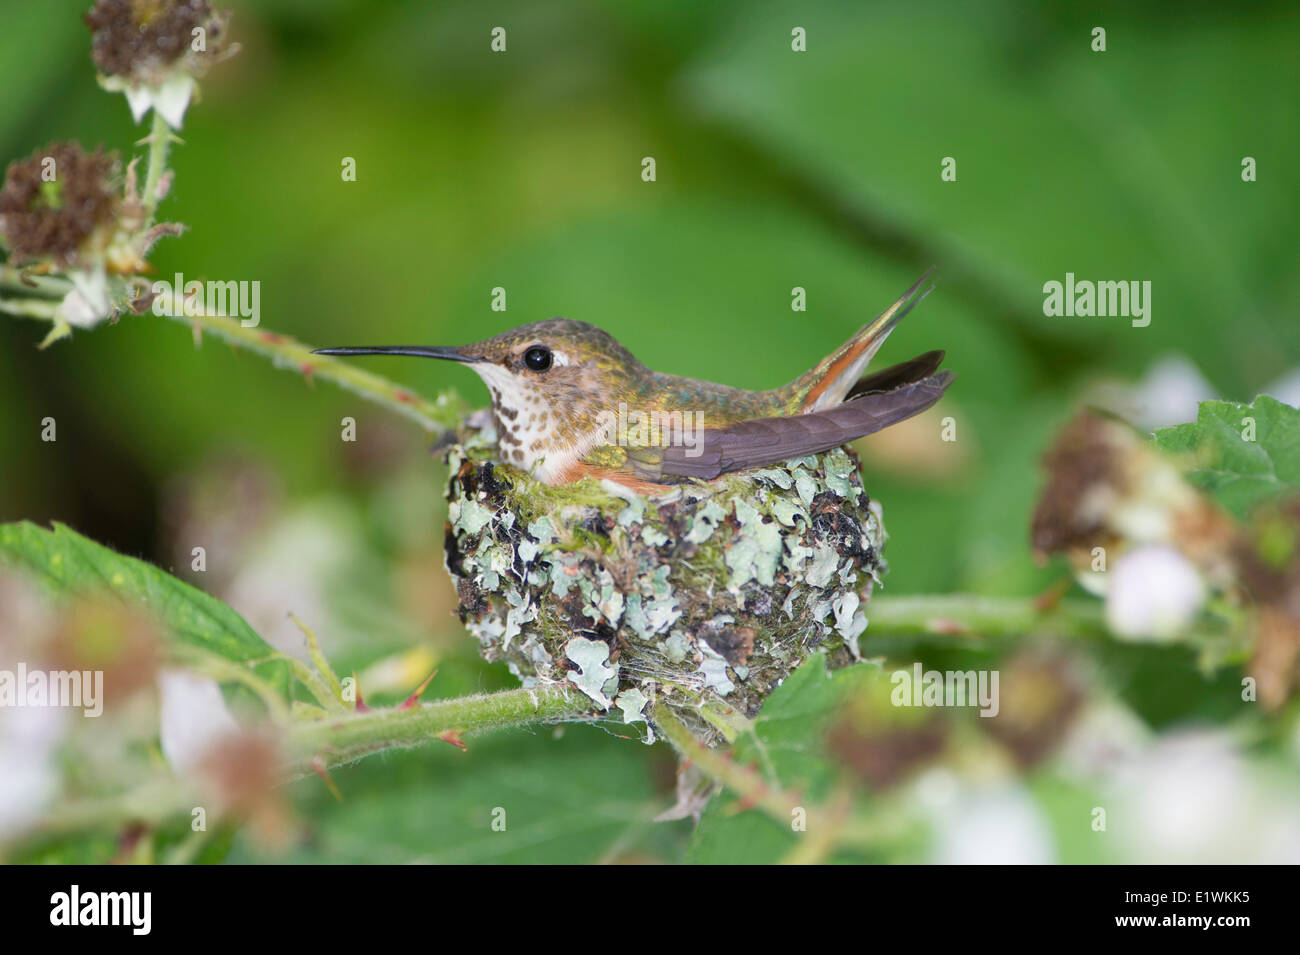 Rufo tiene dos crías de colibrí (selasphorus rufus) aves en el nido .Ladner, British Columbia Foto de stock